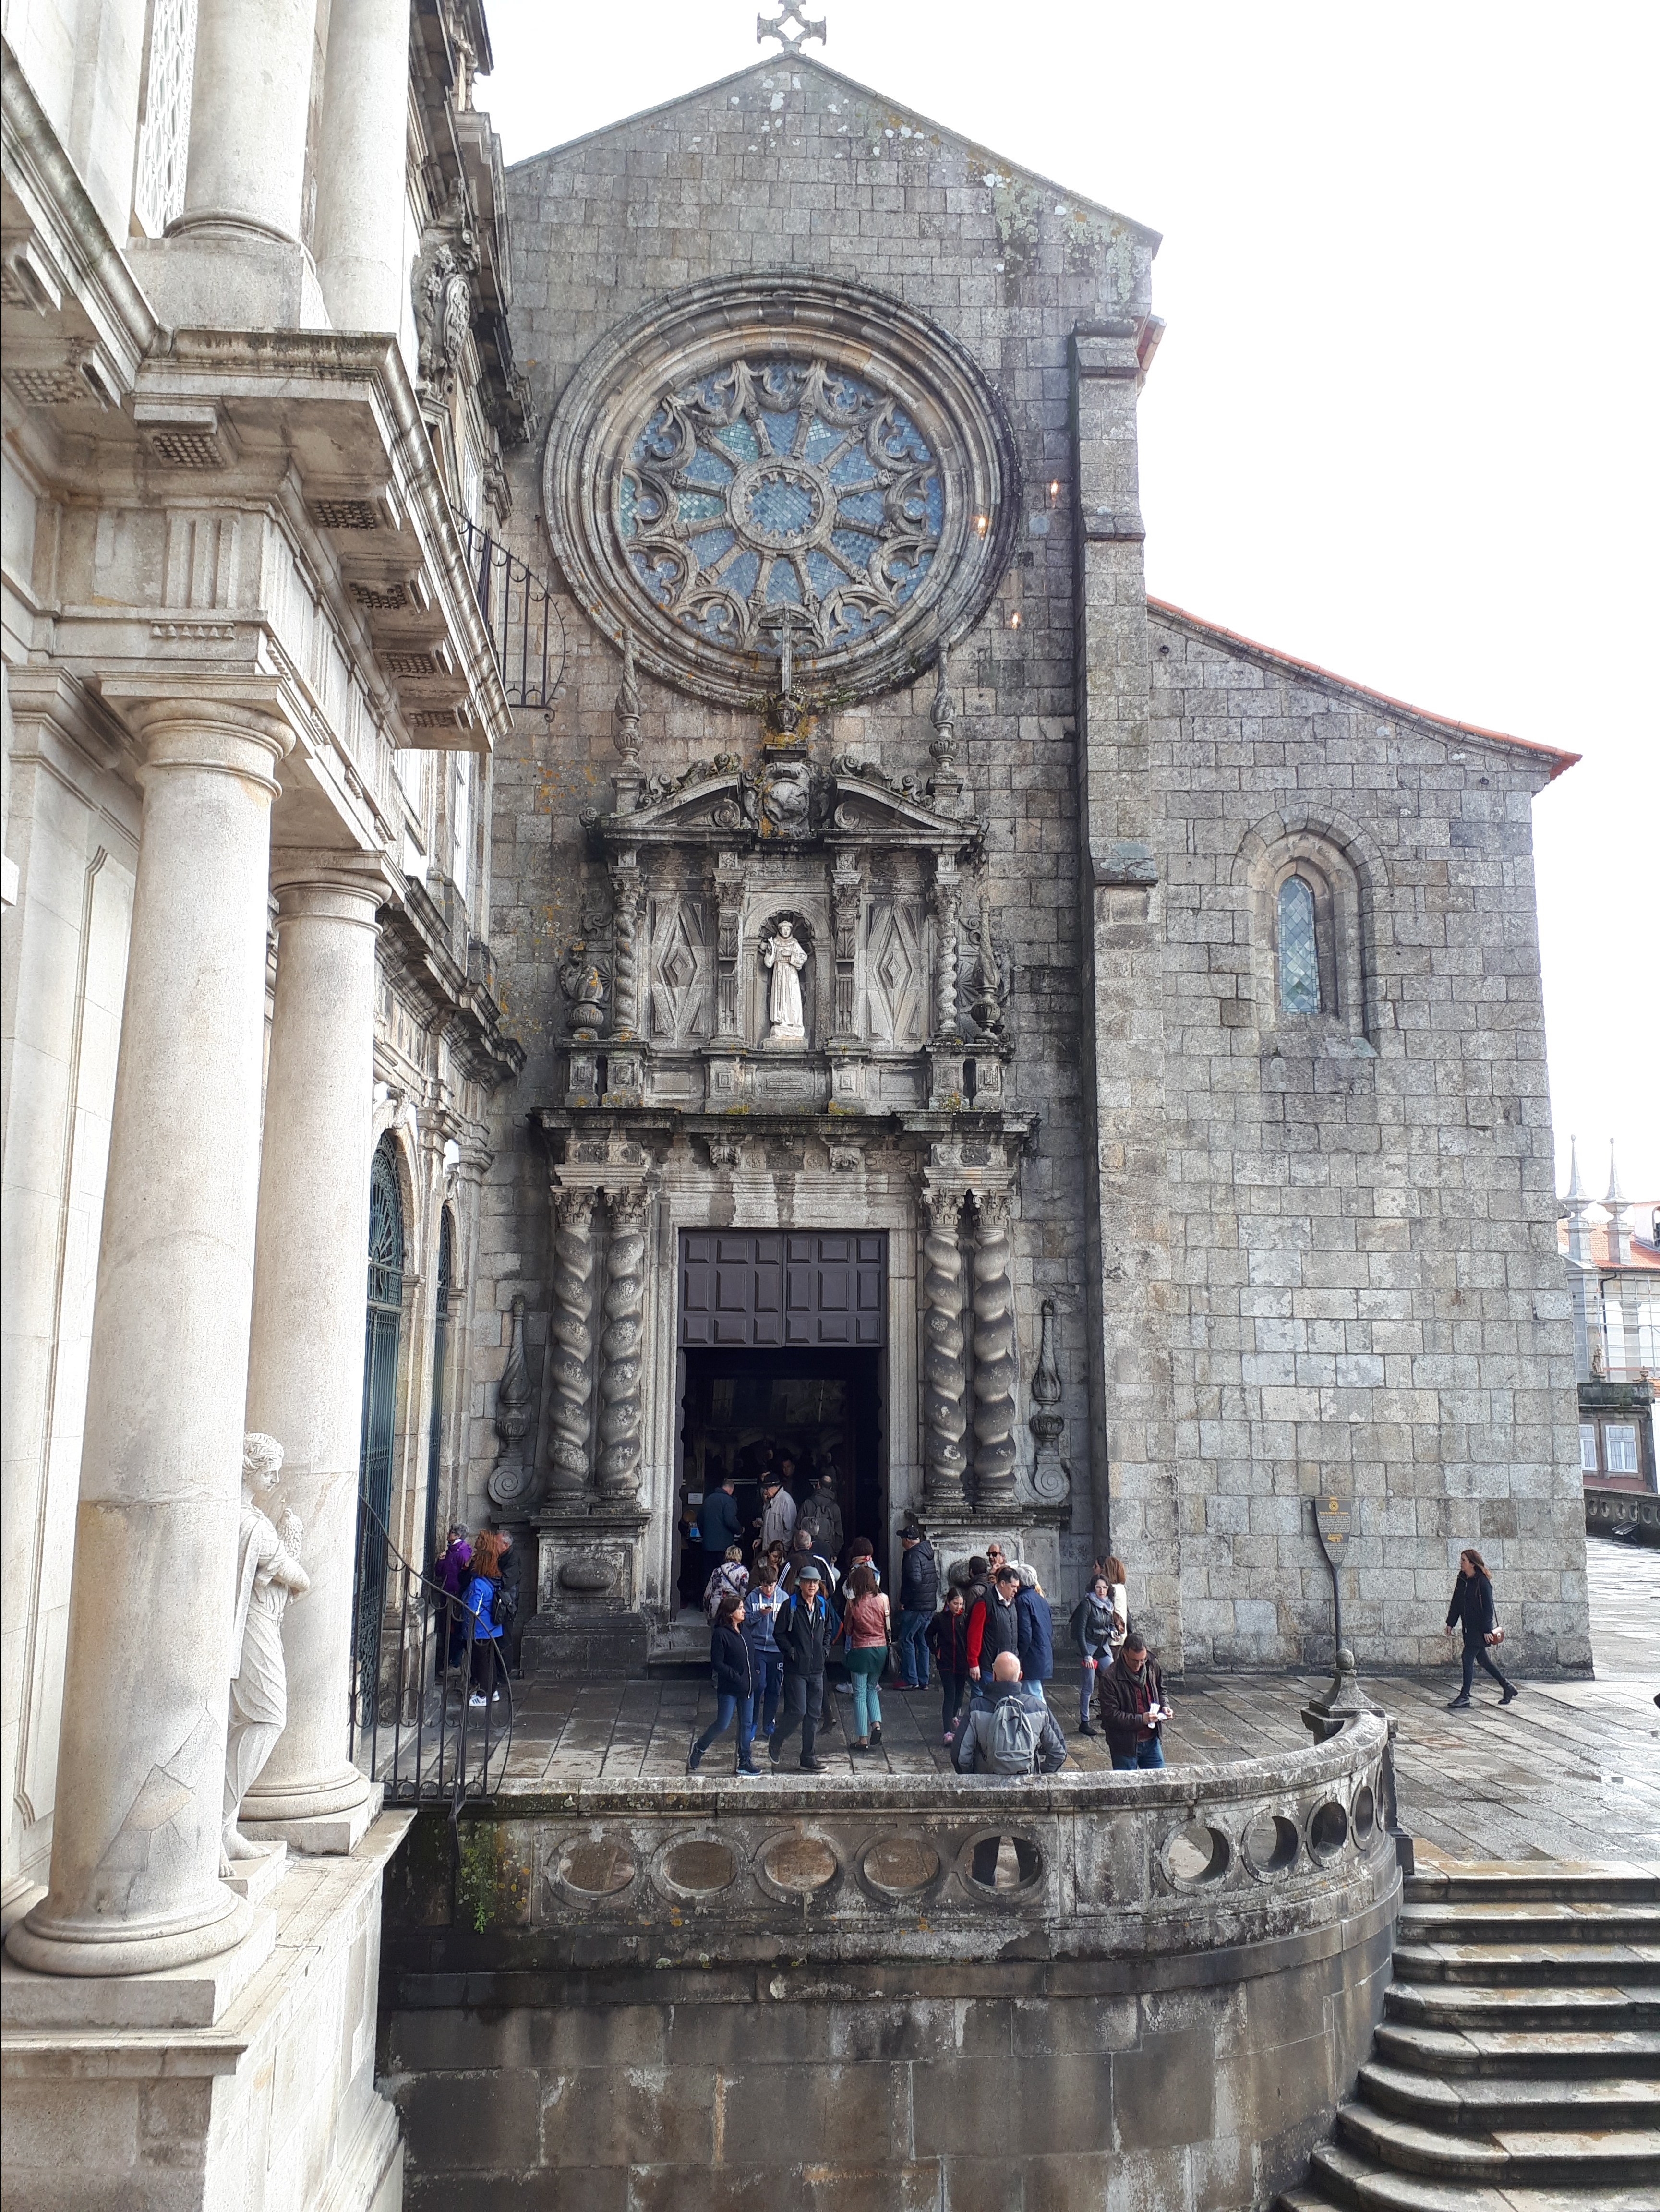 Iglesia gótica con una gran roseta encima de la puerta. Varias personas se esperan frente a su entrada.